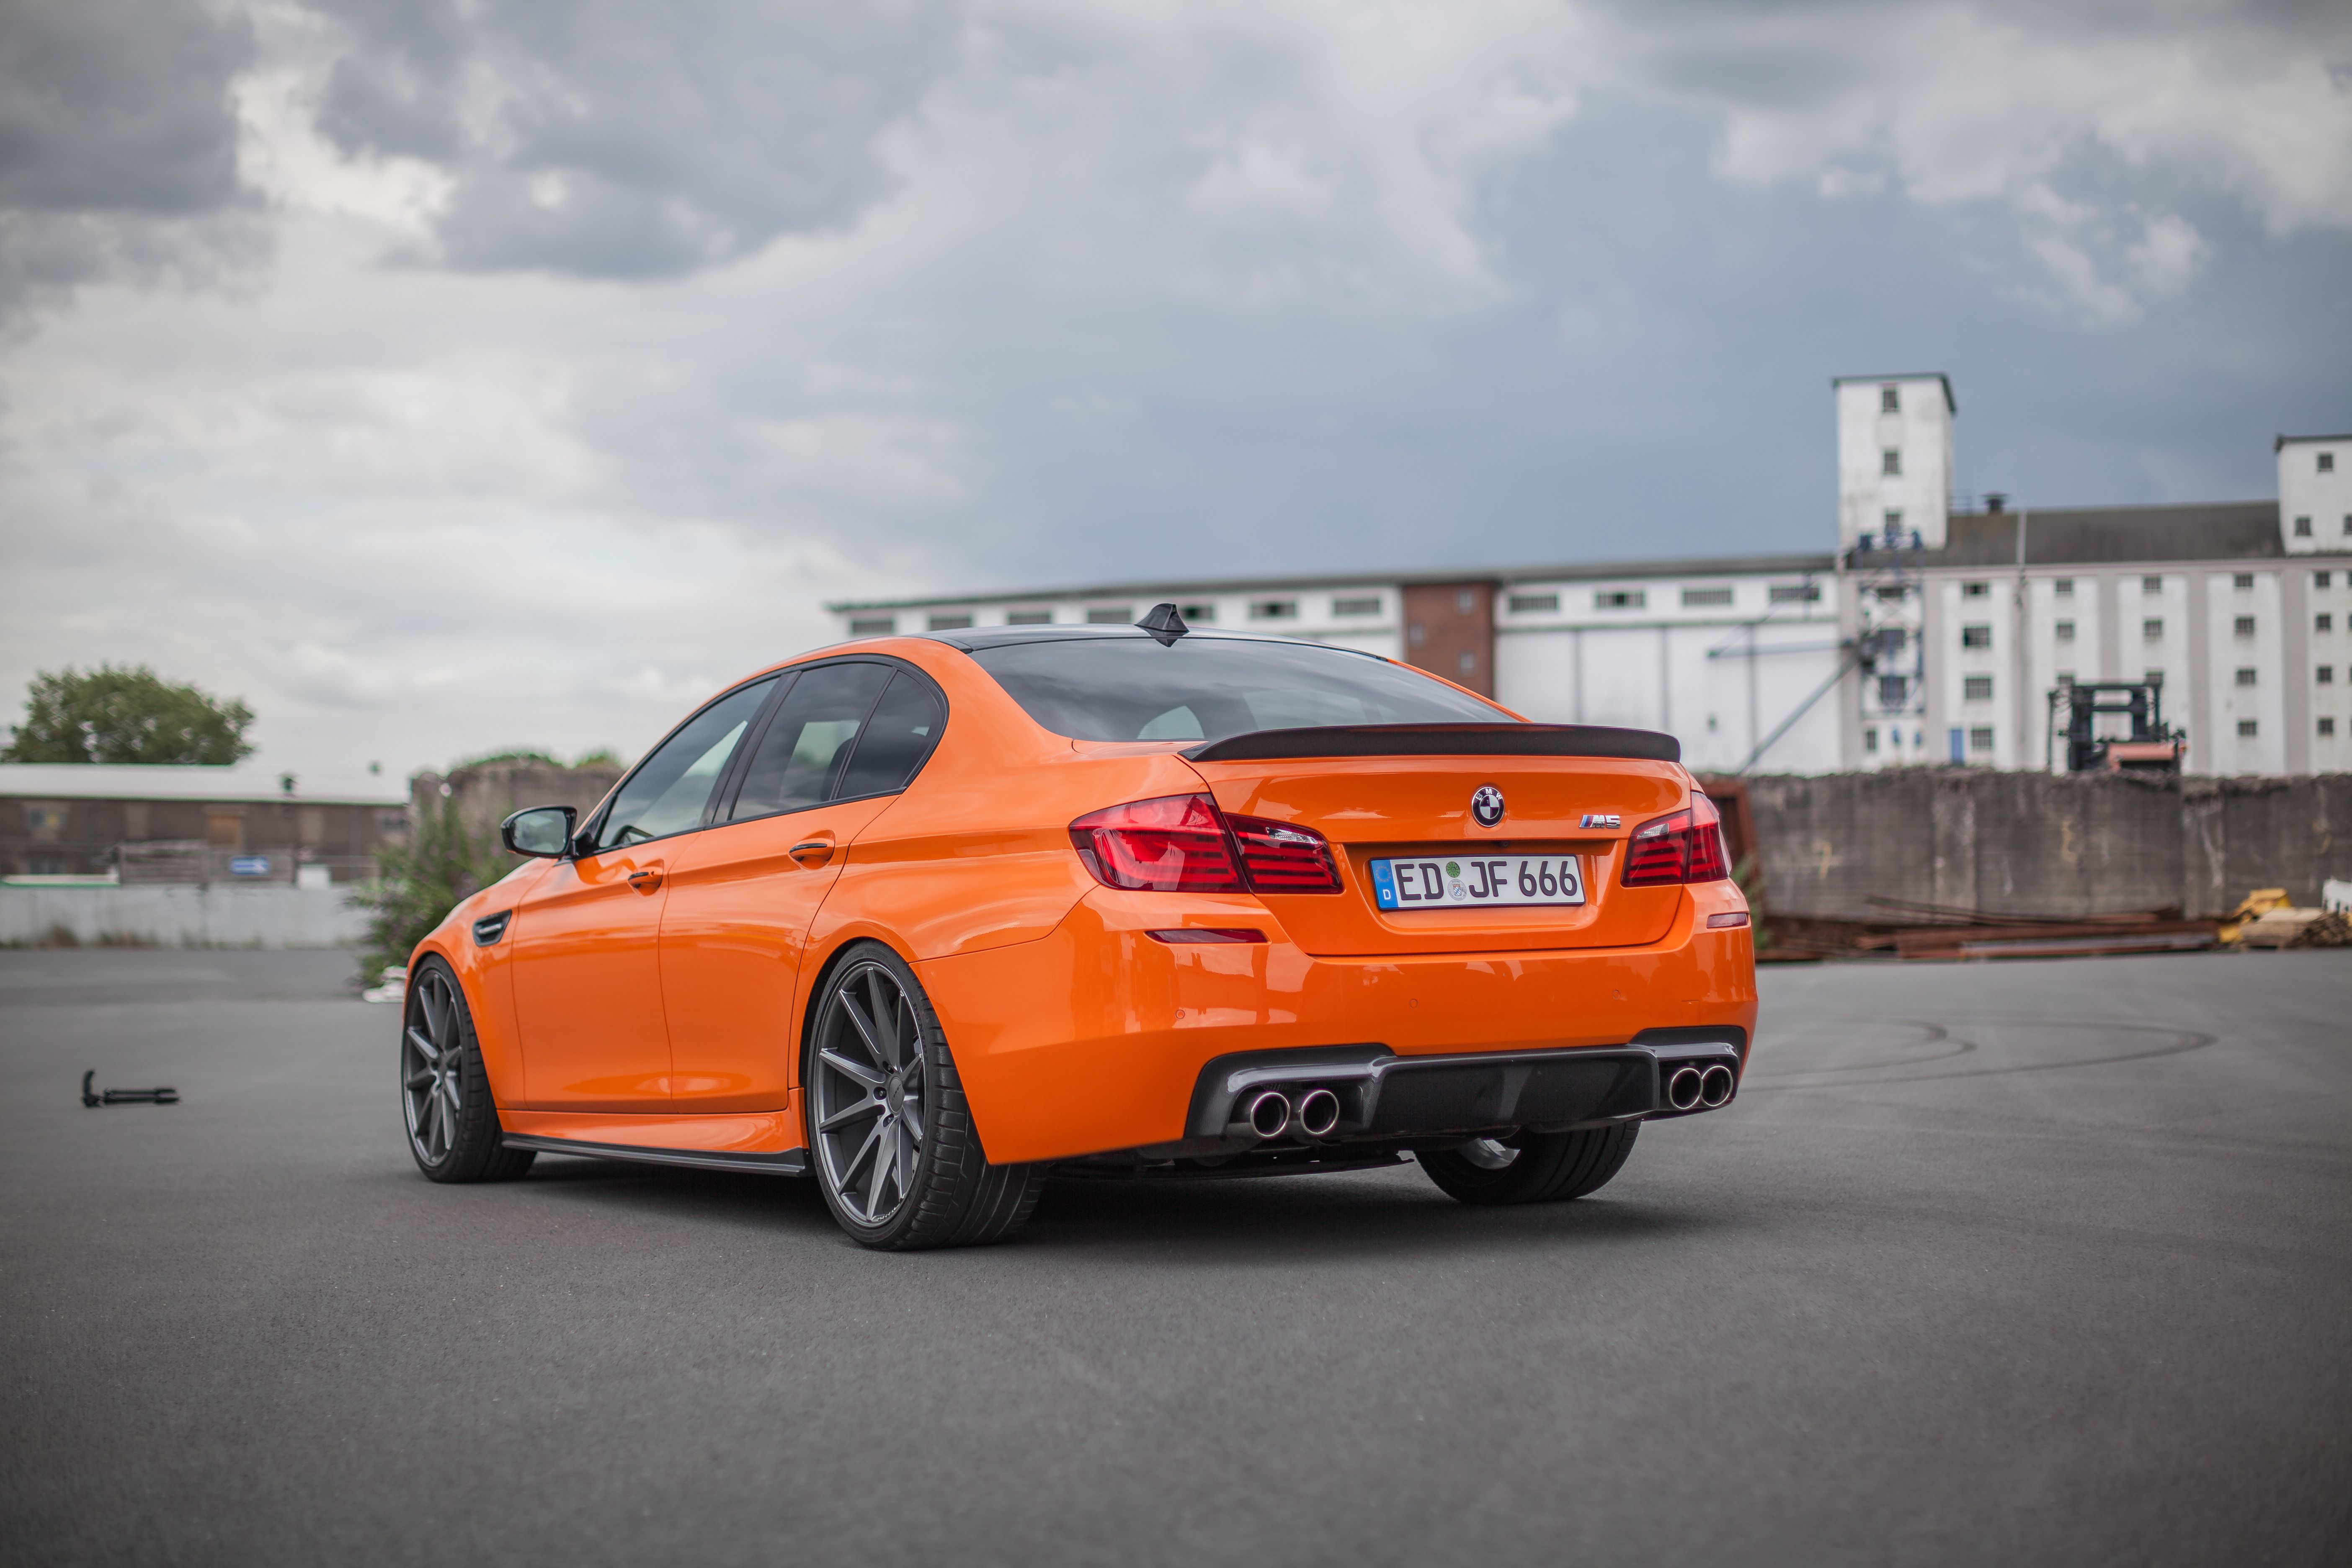 М5 зад. BMW m5 f10 Orange. BMW m5 f90 оранжевая. BMW m5 2016. БМВ м5 ф10 оранжевая.